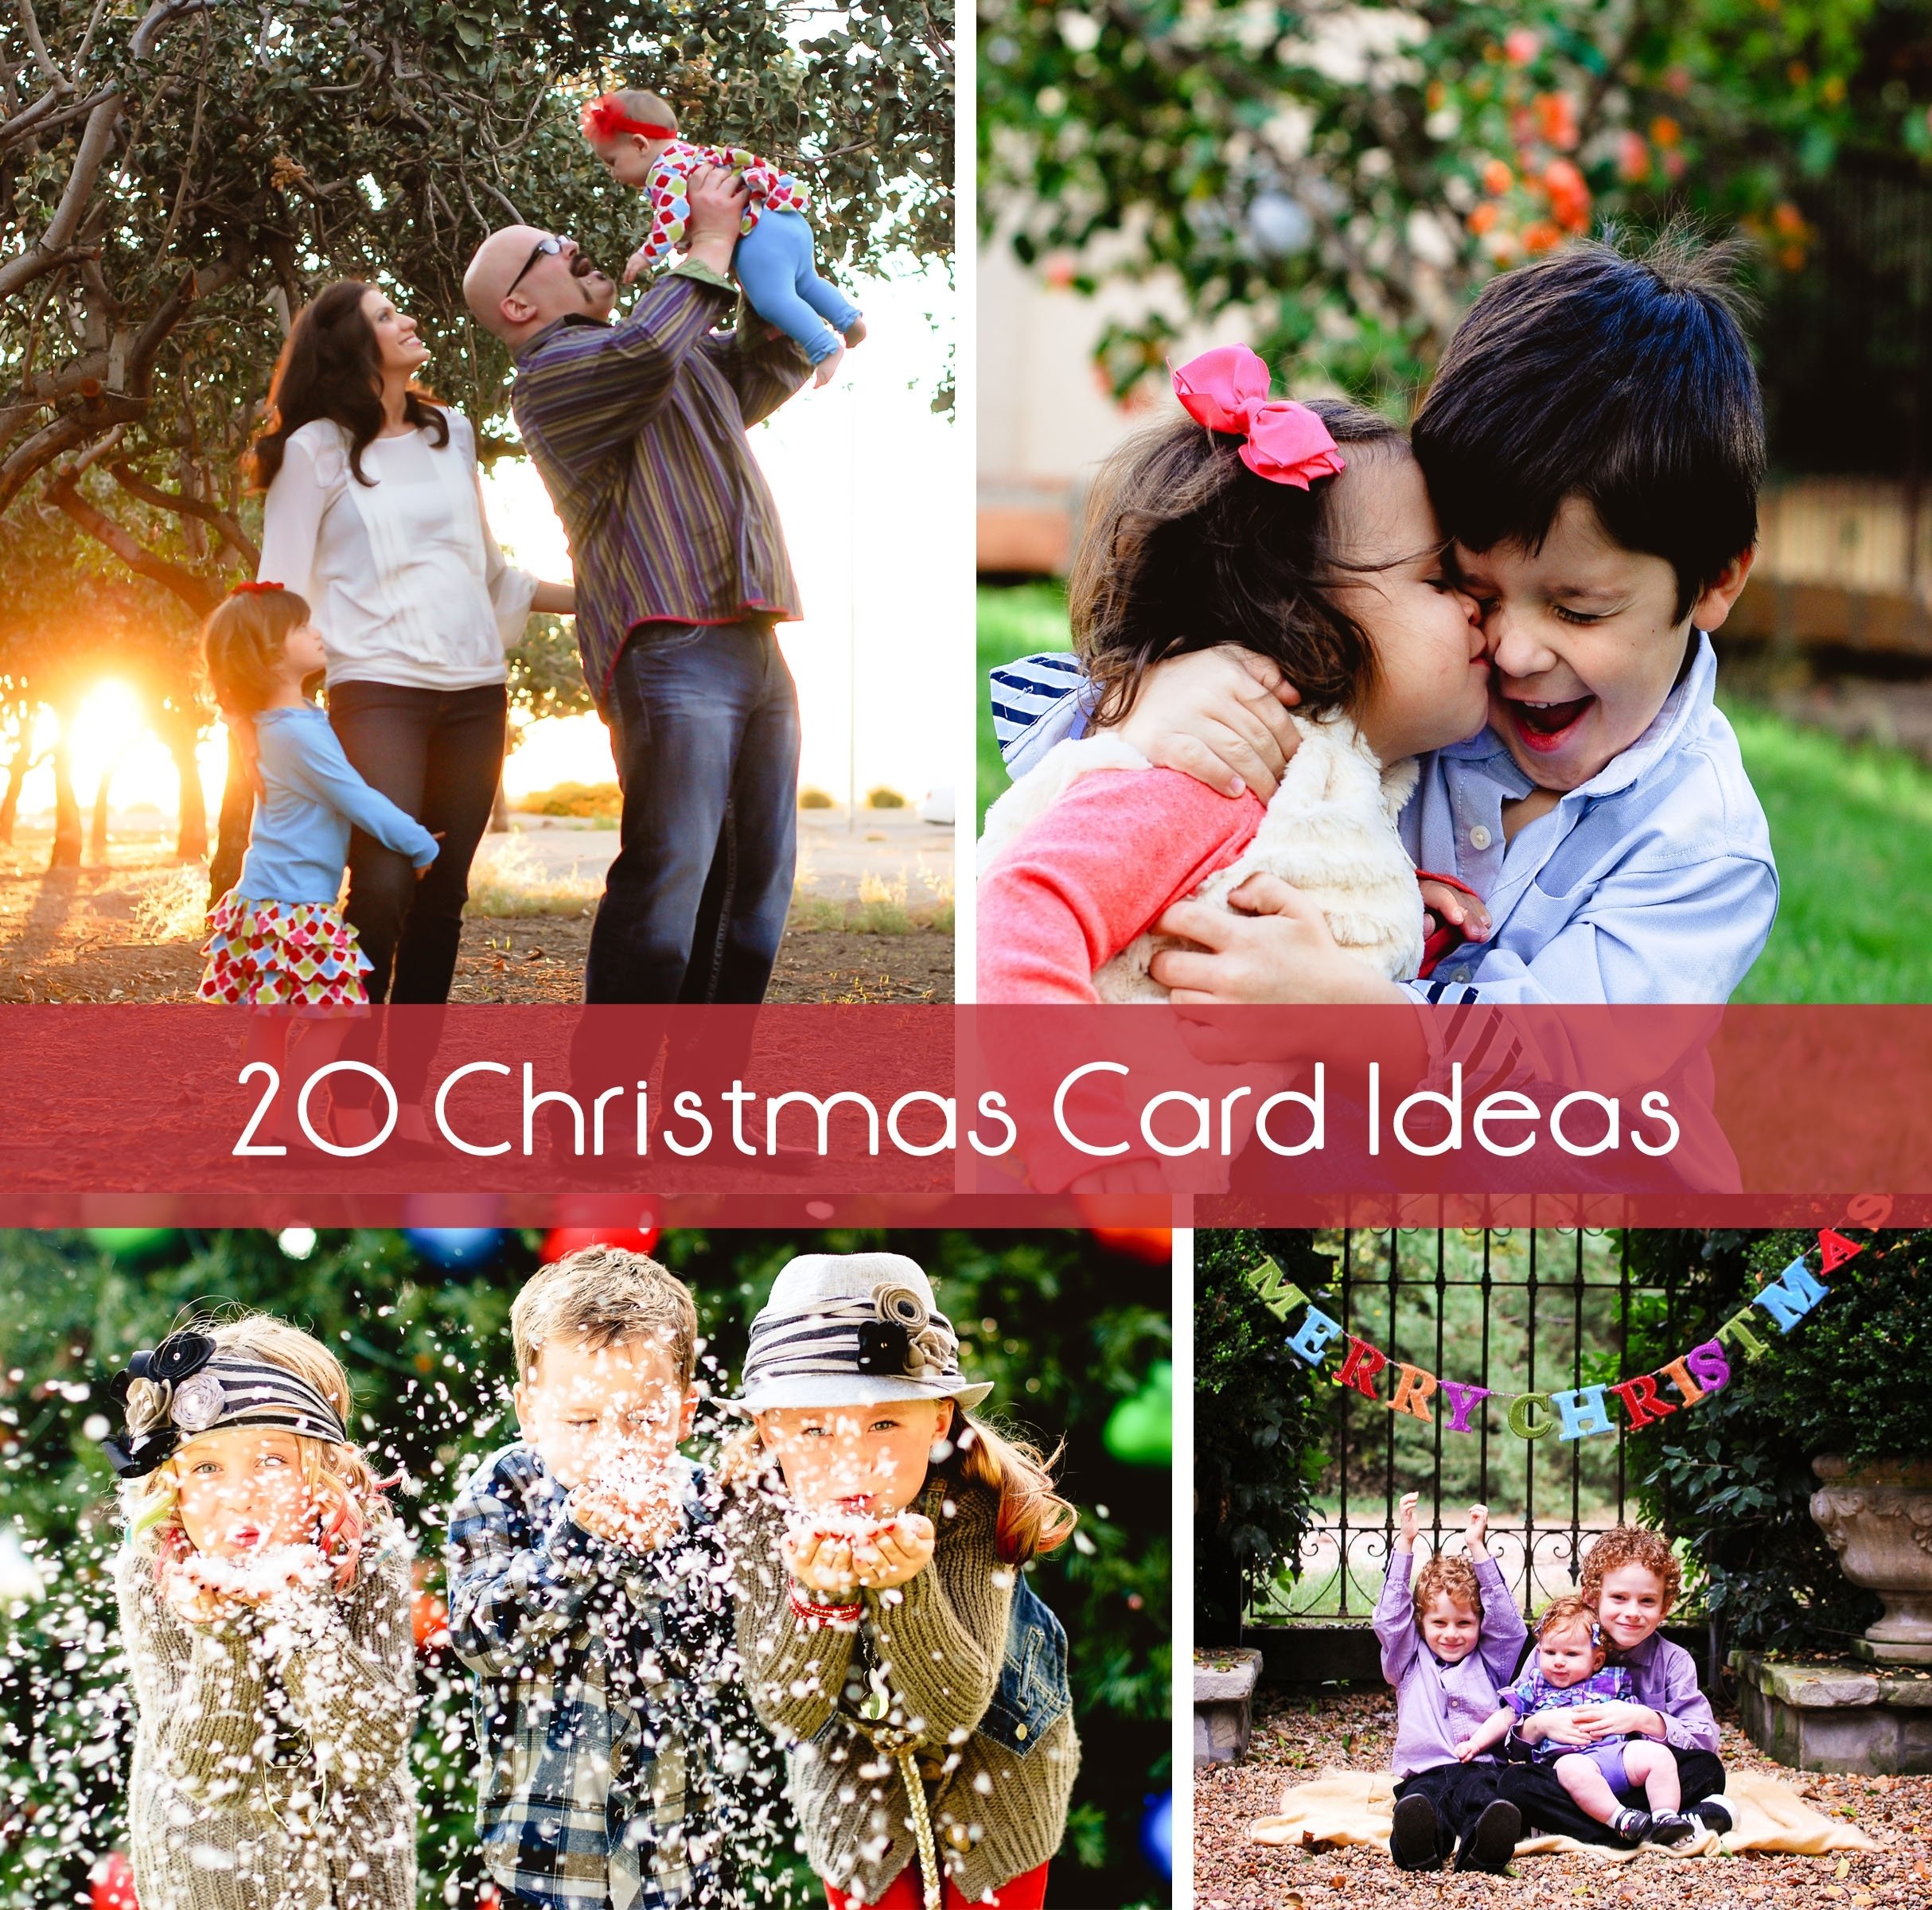 10 Nice Funny Christmas Card Photo Ideas For Kids 20 christmas card ideas 8 2022